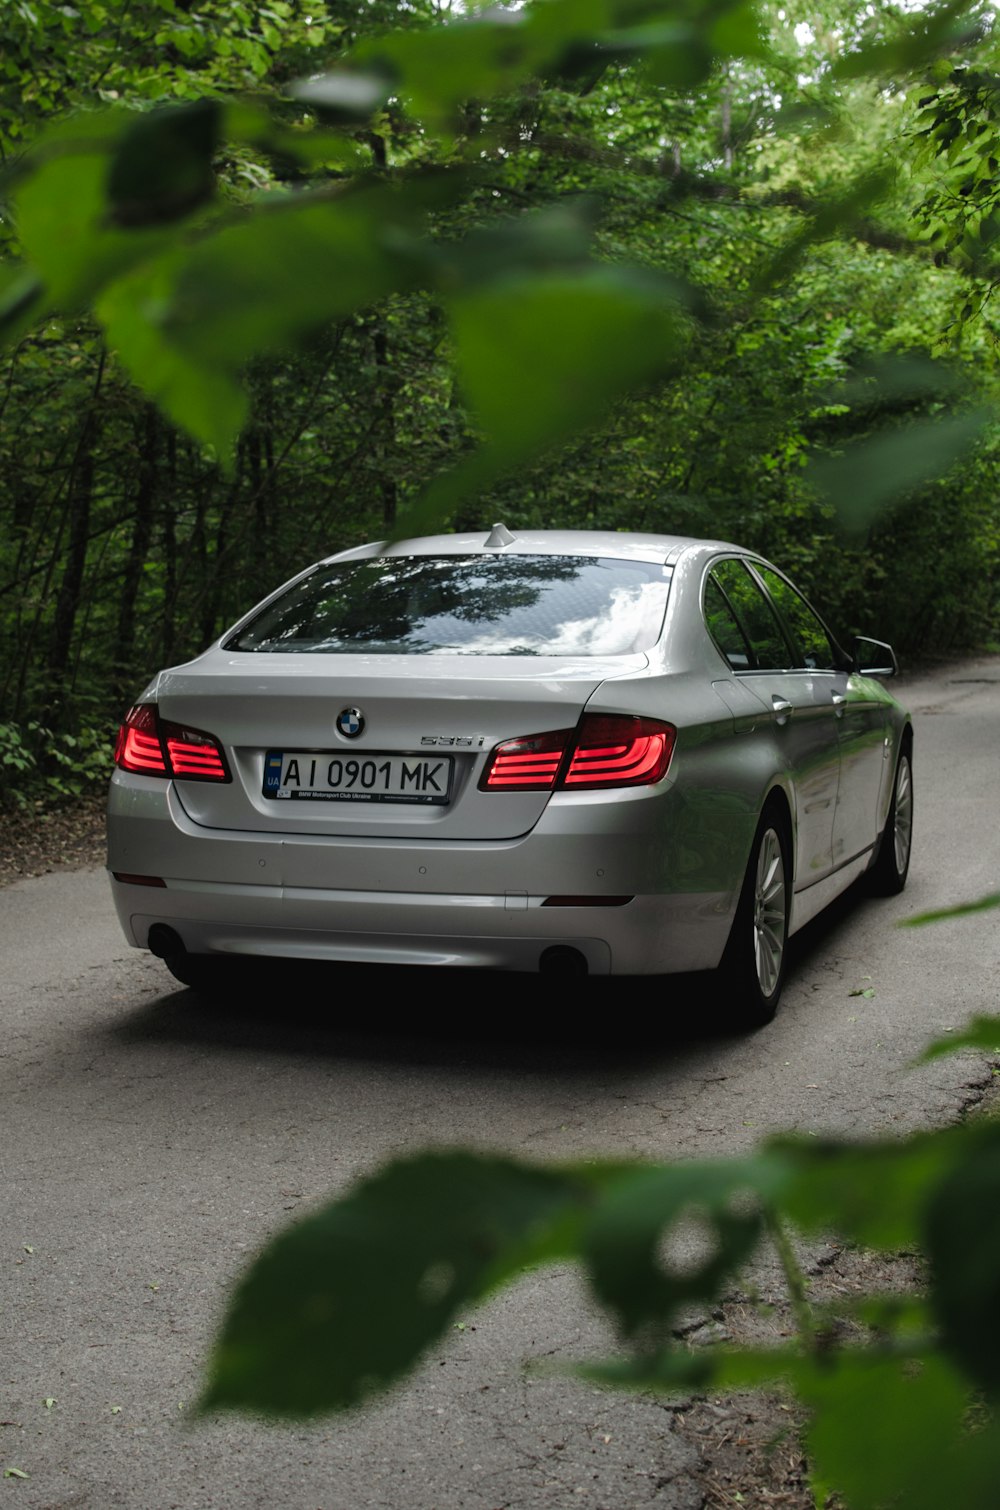 회색 BMW M 3 쿠페는 낮 동안 회색 콘크리트 도로에 주차